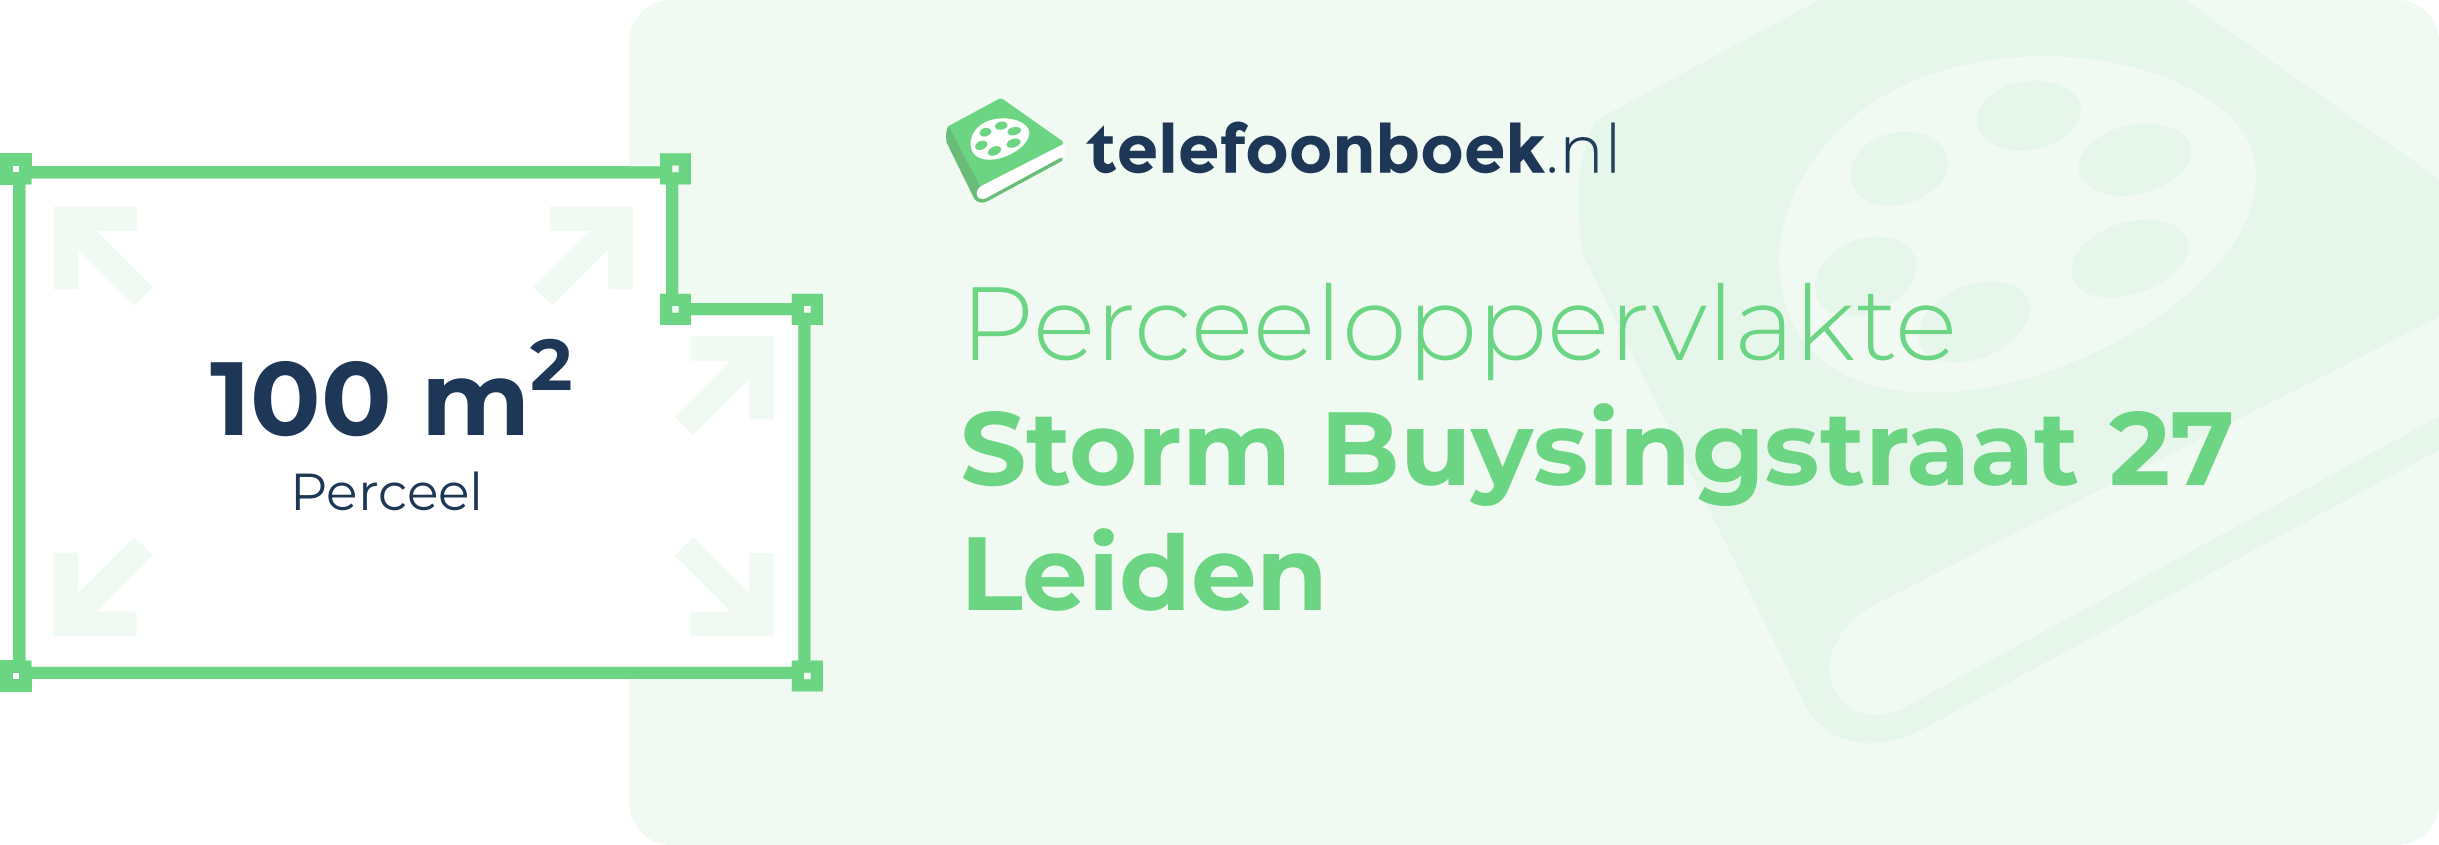 Perceeloppervlakte Storm Buysingstraat 27 Leiden